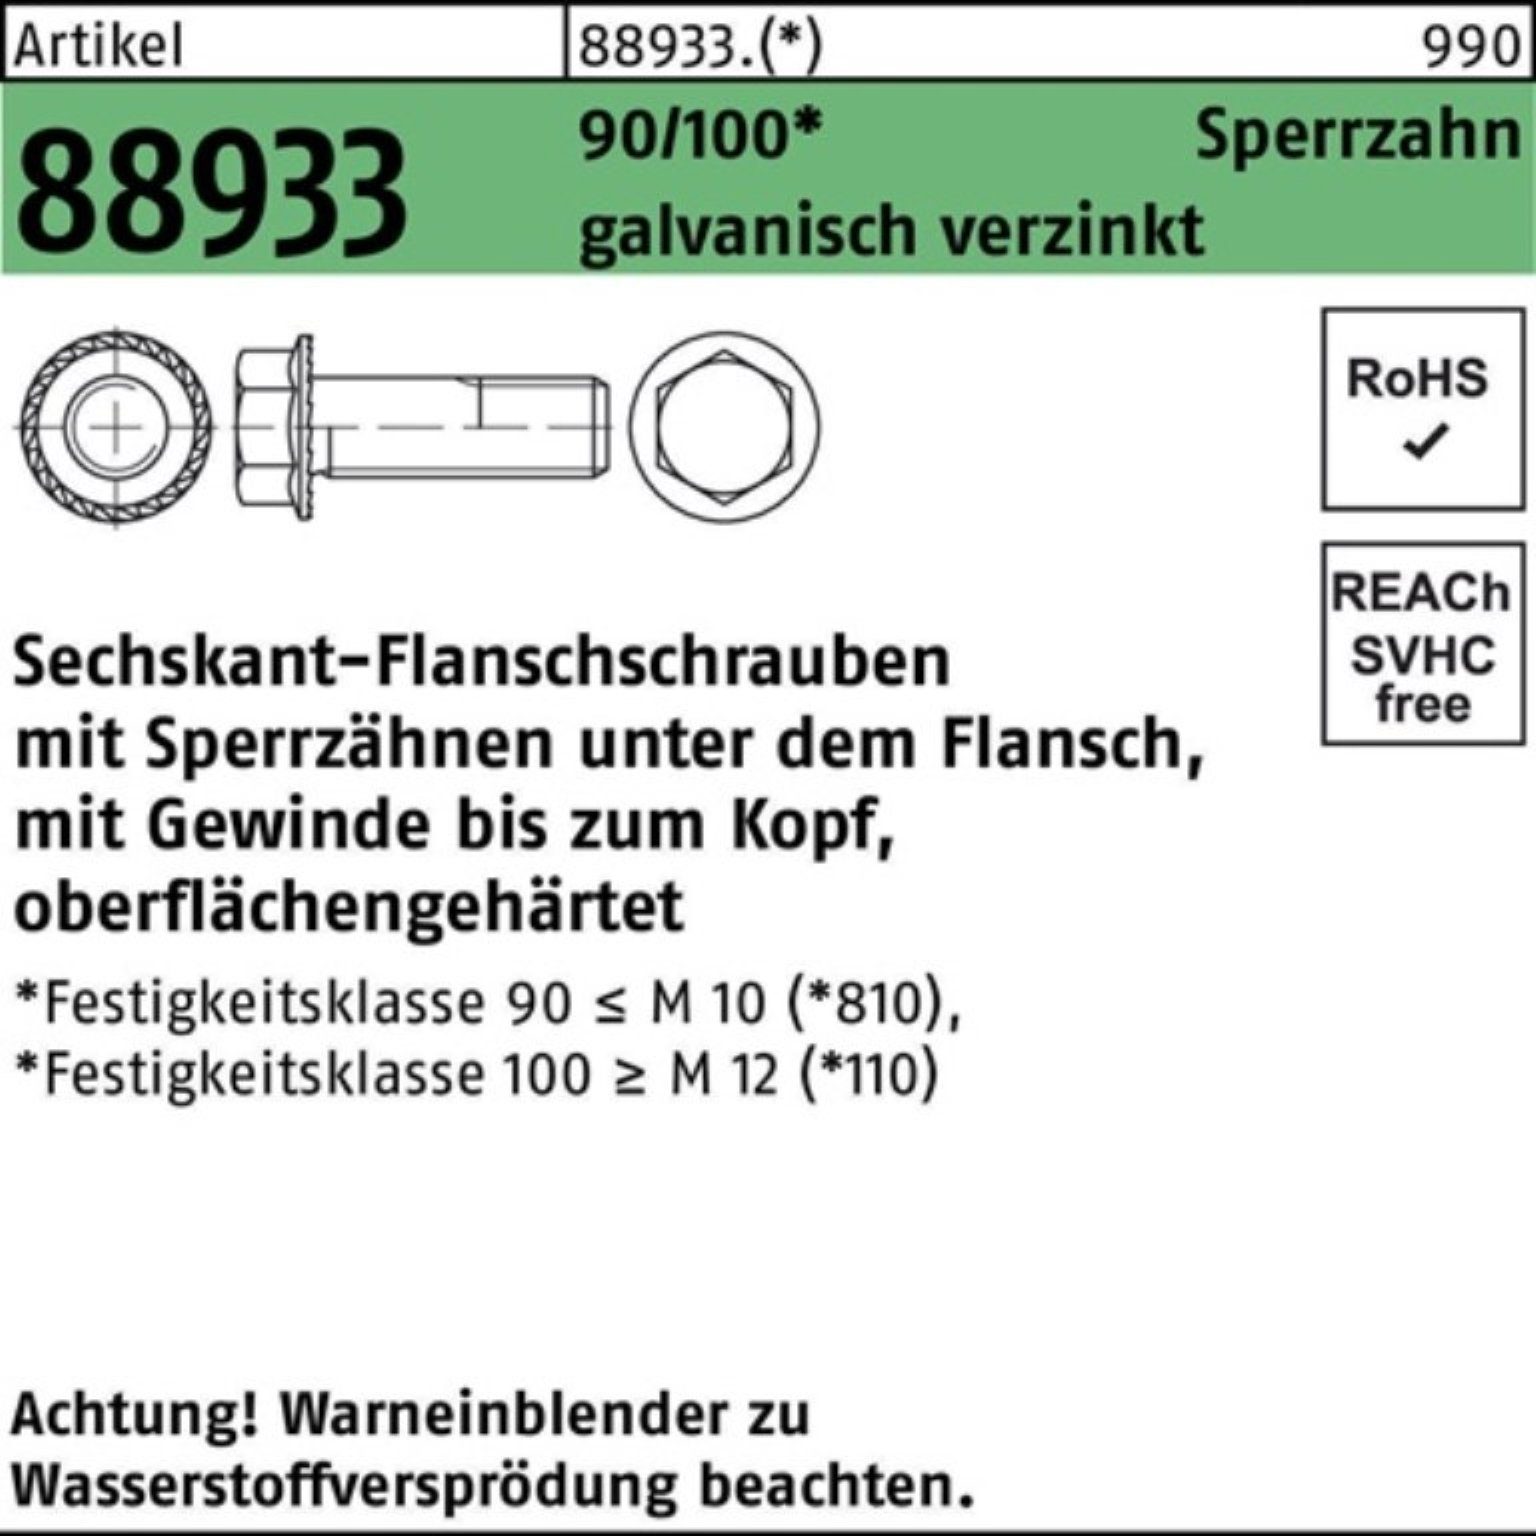 R Pack VG ga 200er 88933 Sechskantflanschschraube Sperrz. Schraube M8x16 Reyher 90/100